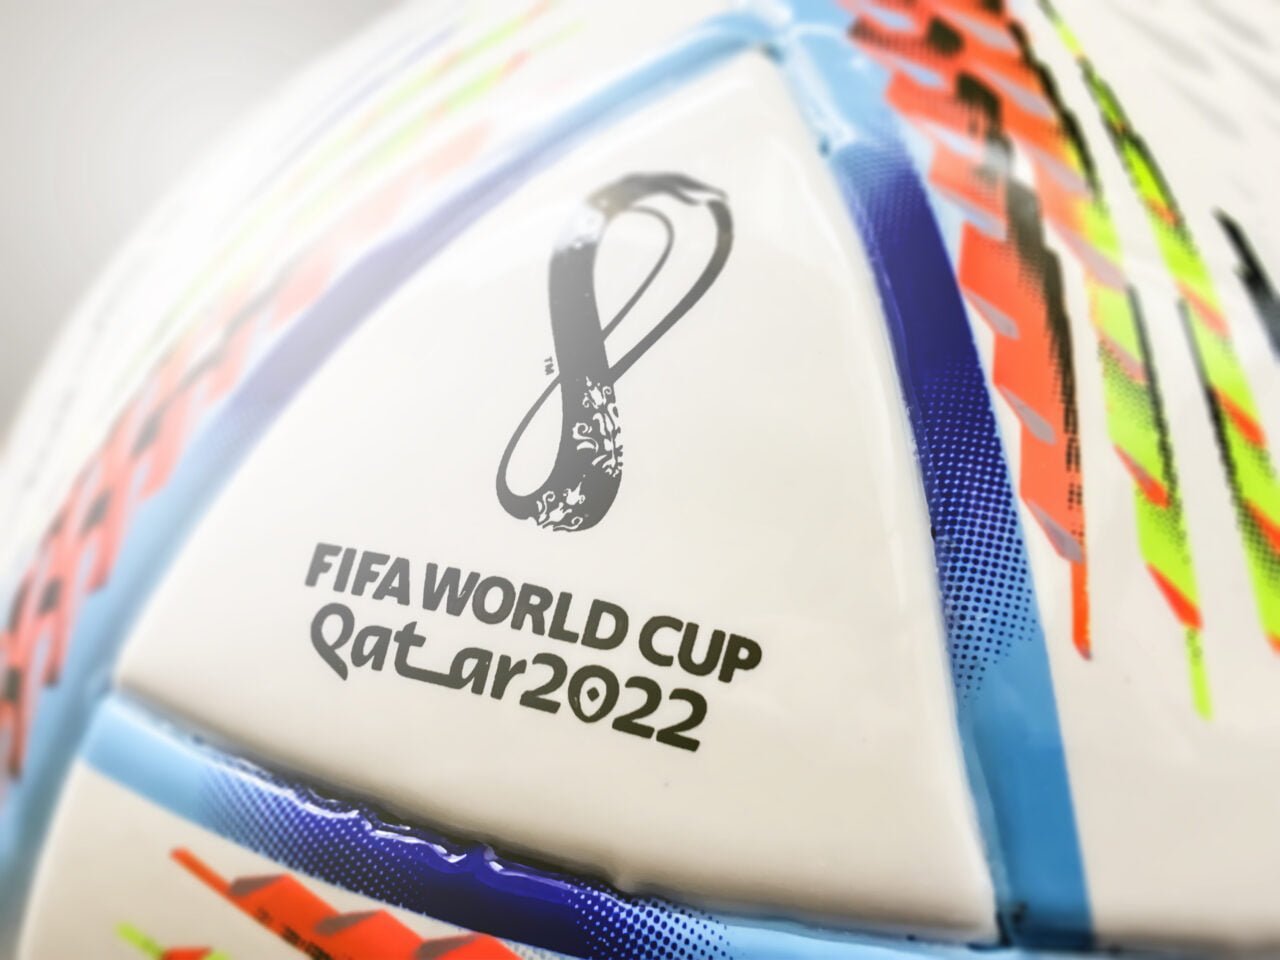 Copa do Mundo 2022 - promoção para torcedores